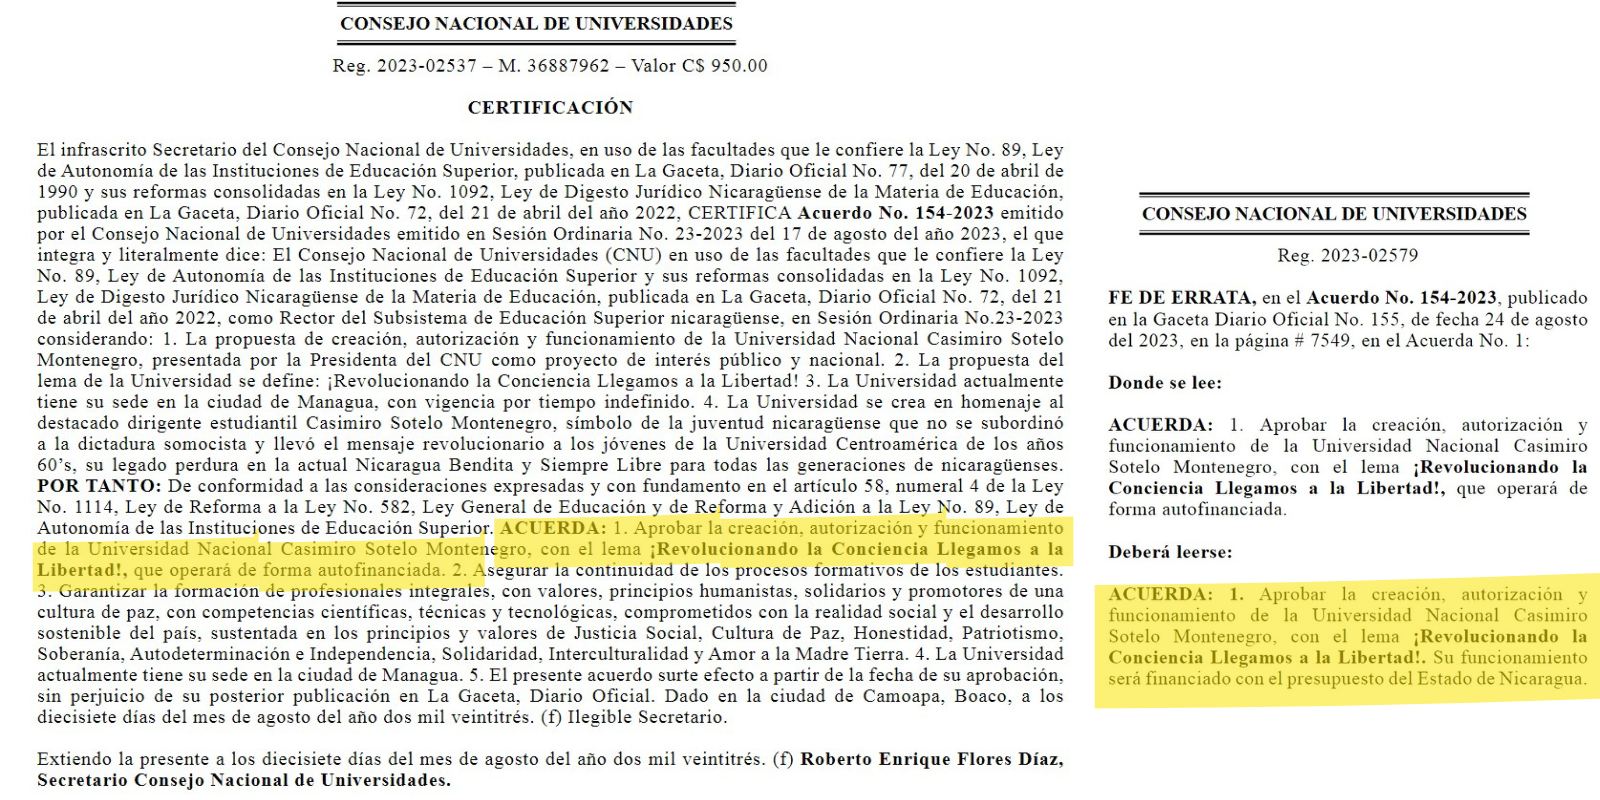 A la izquierda la publicación en La Gaceta del 24 de agosto y a la derecha la de este viernes 25 de agosto donde rectifican la decisión.